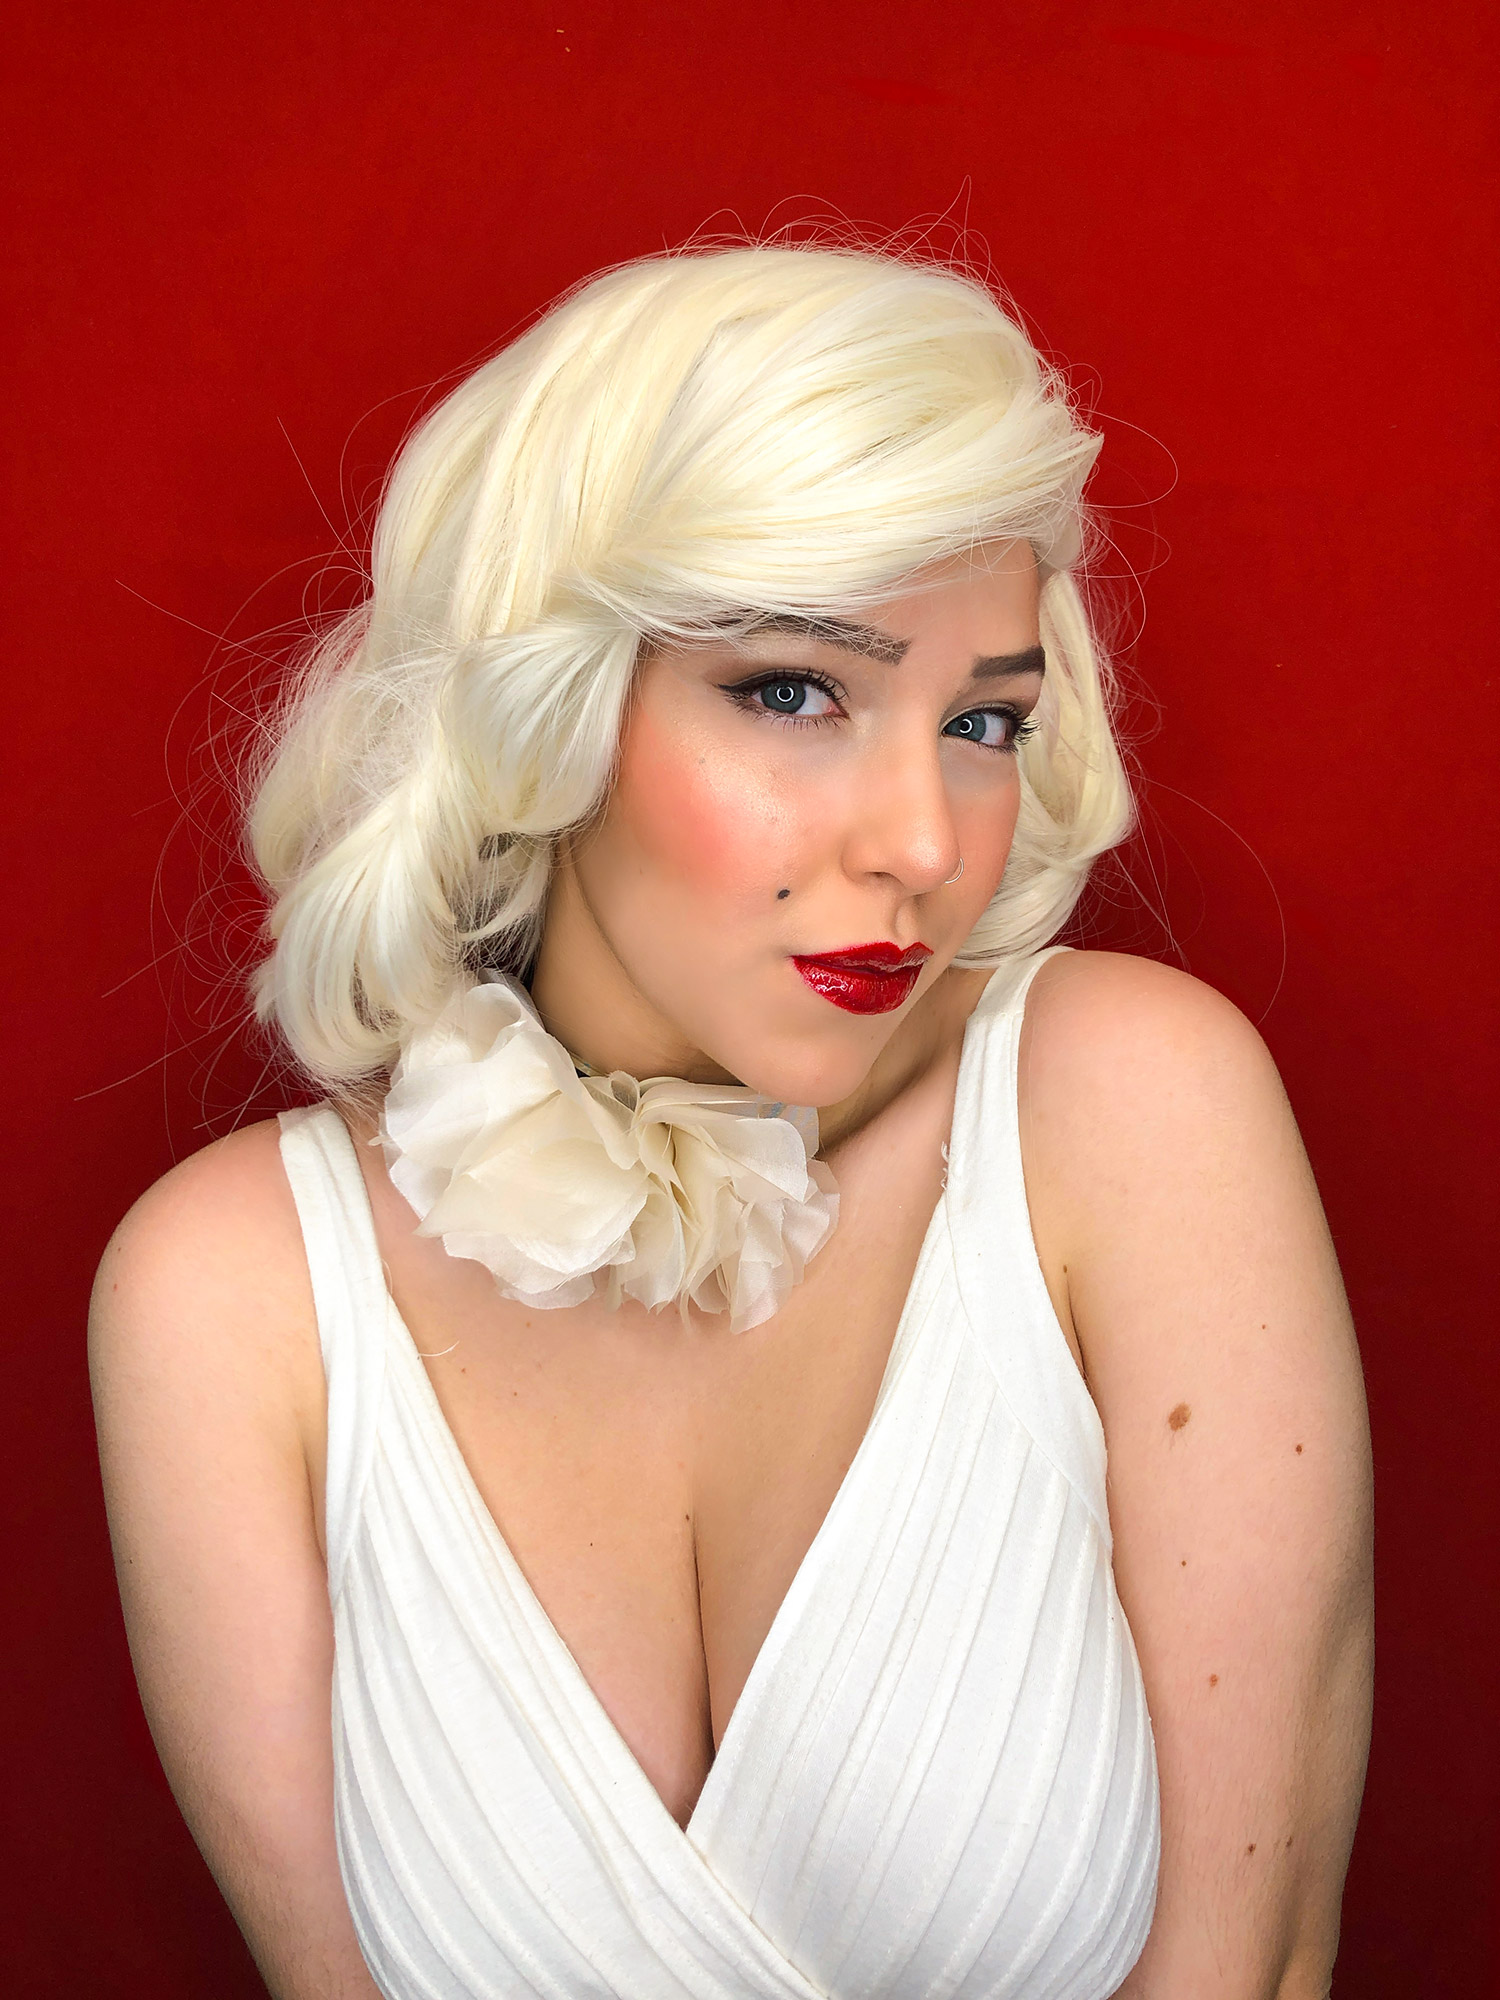 Ritratto fotografico cosplay di Marilyn Monroe, interpretata per le collane fiorite Vipuntozero